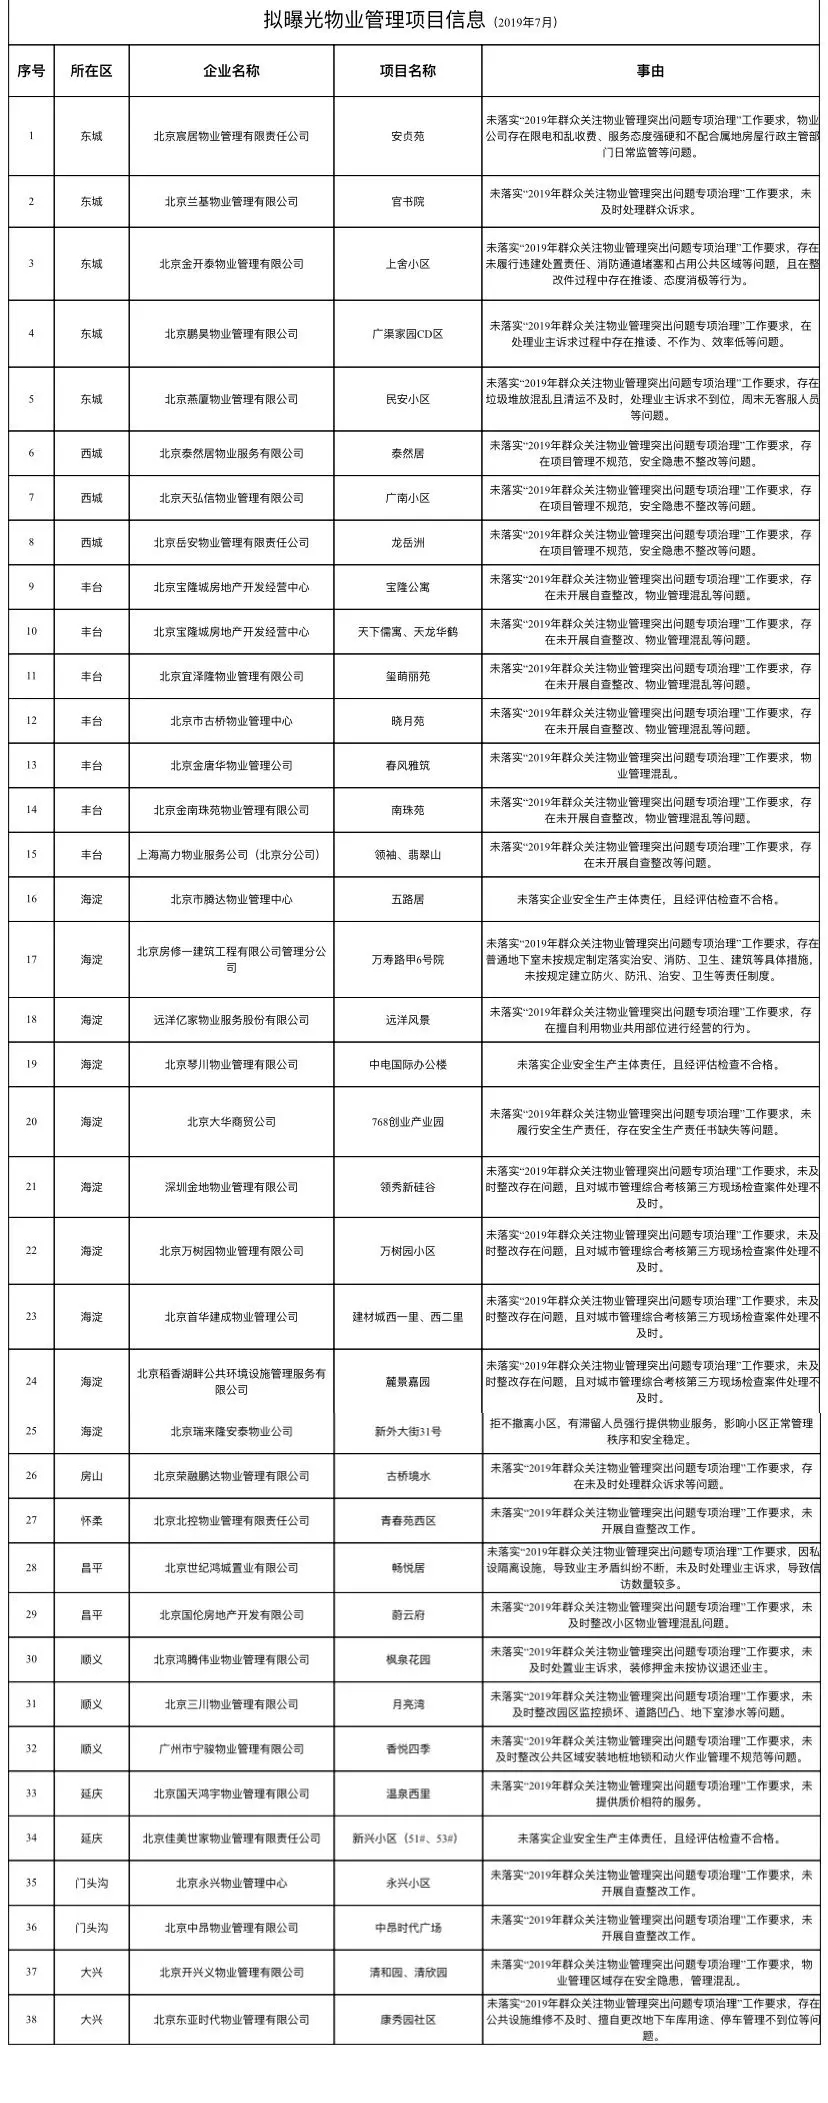 北京集中曝光37家违规物业管理公司 计入企业不良行为记录